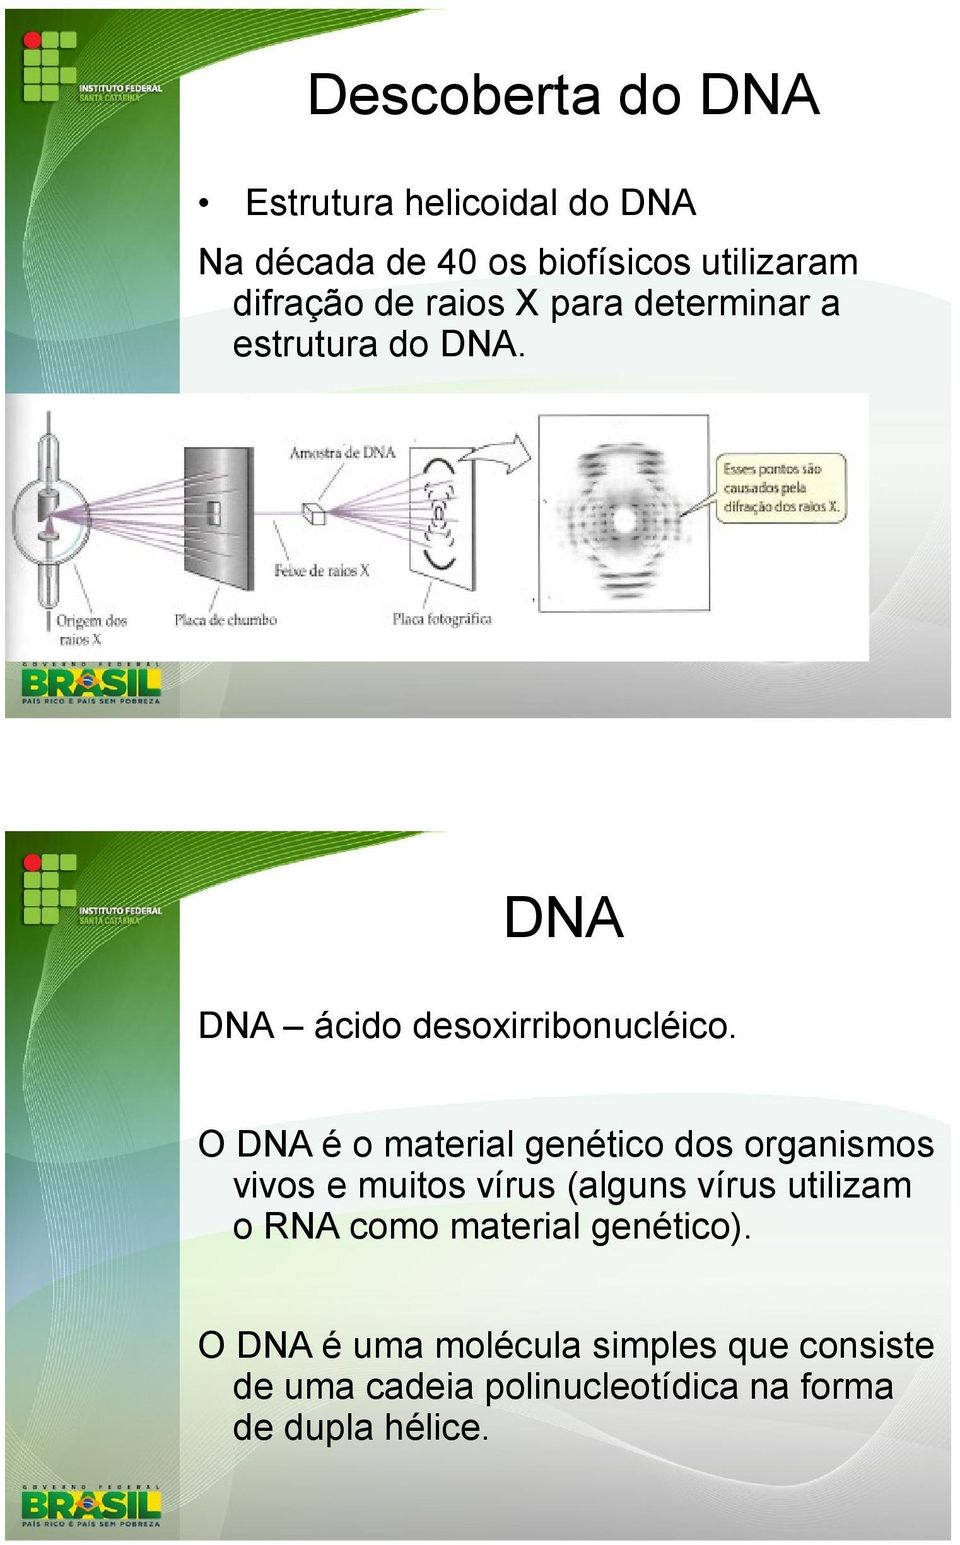 O DNA é o material genético dos organismos vivos e muitos vírus (alguns vírus utilizam o RNA como